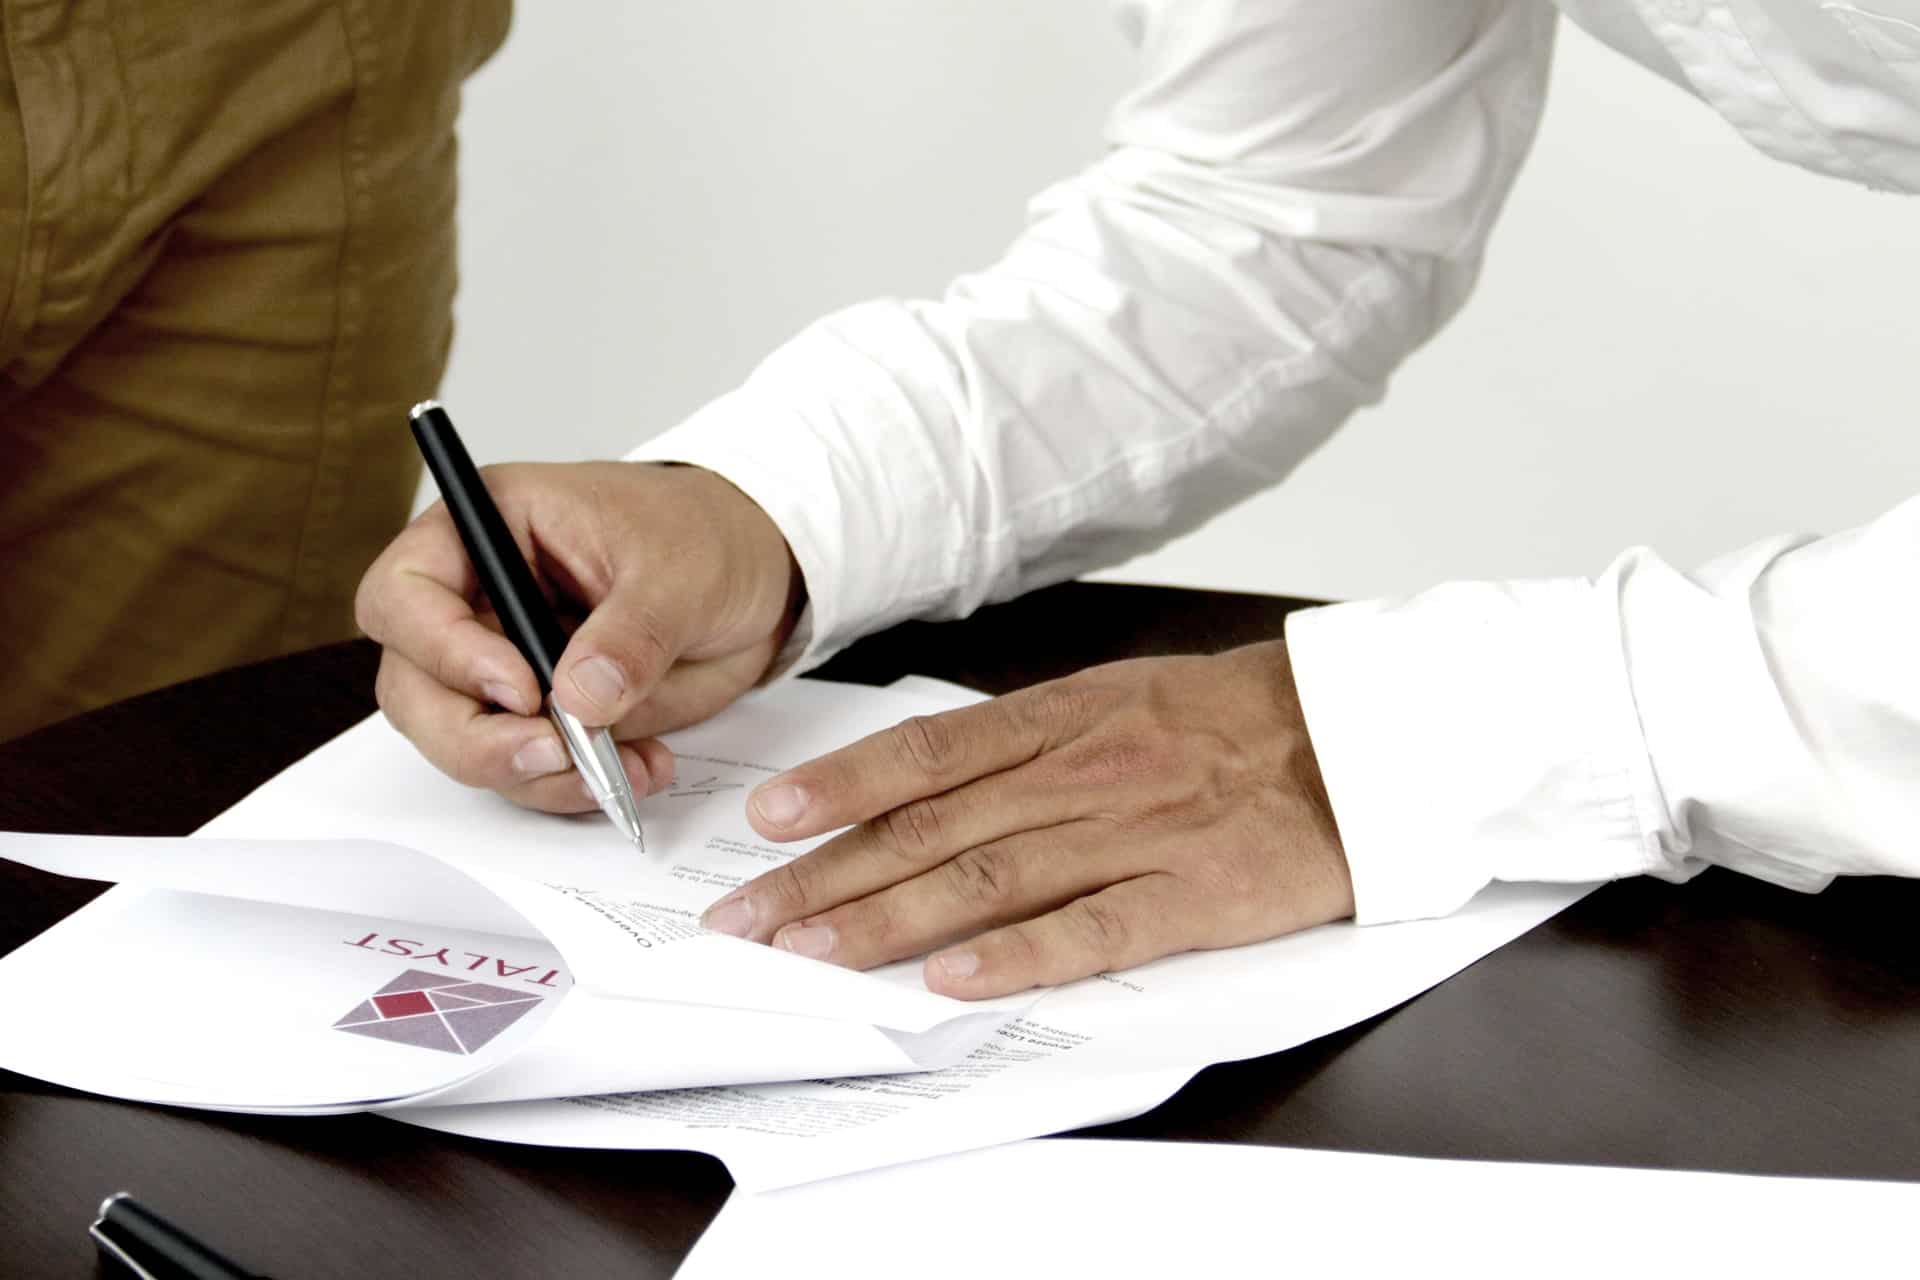 אדם מחזיק עט לצורך בדיקת מסמכים